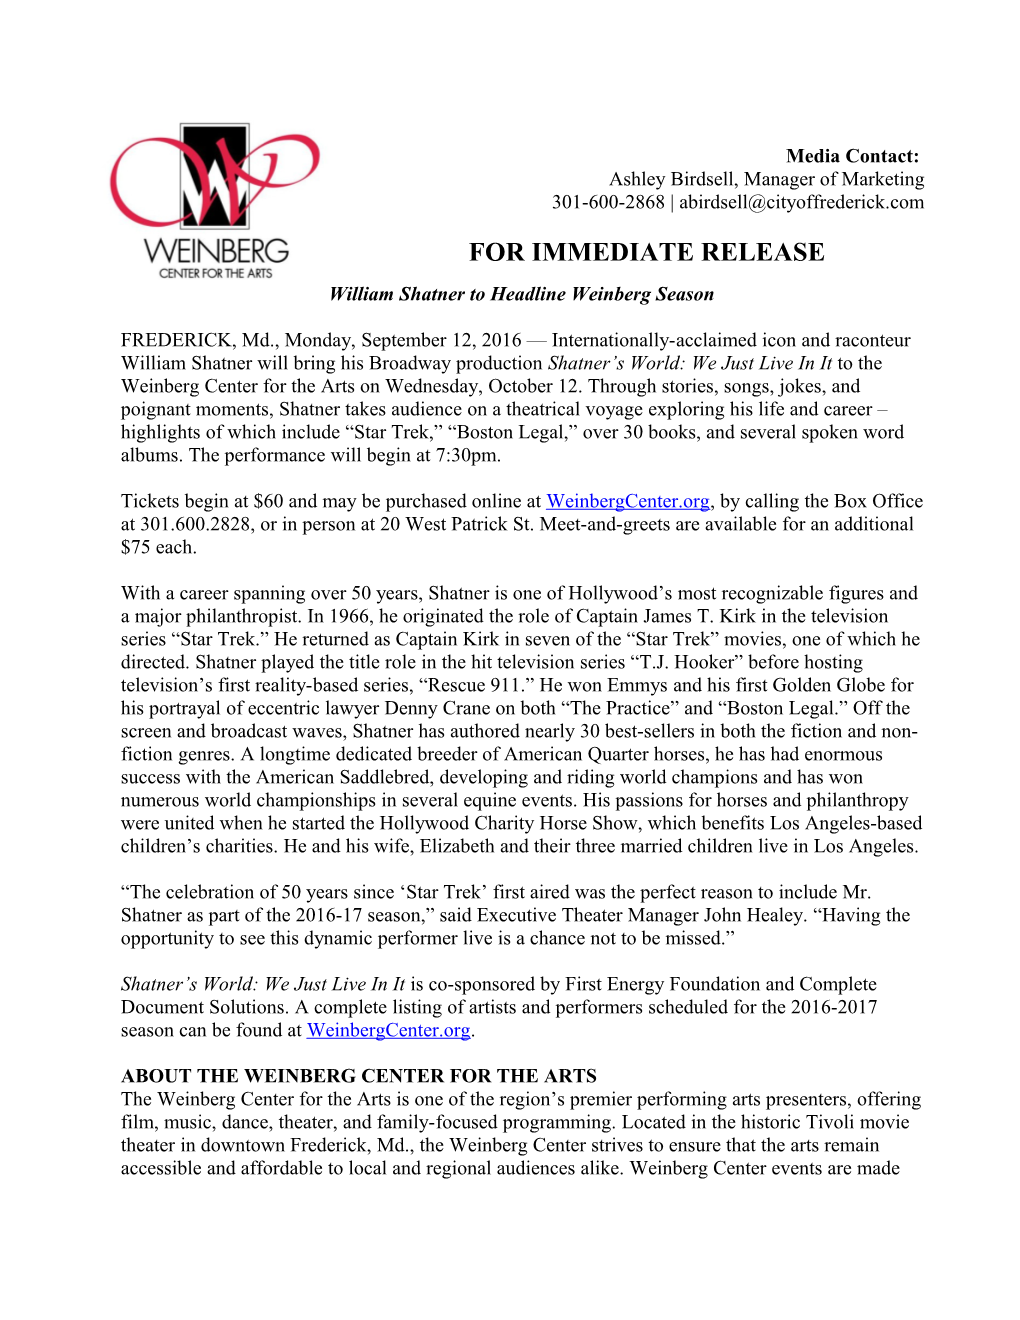 William Shatner to Headline Weinberg Season